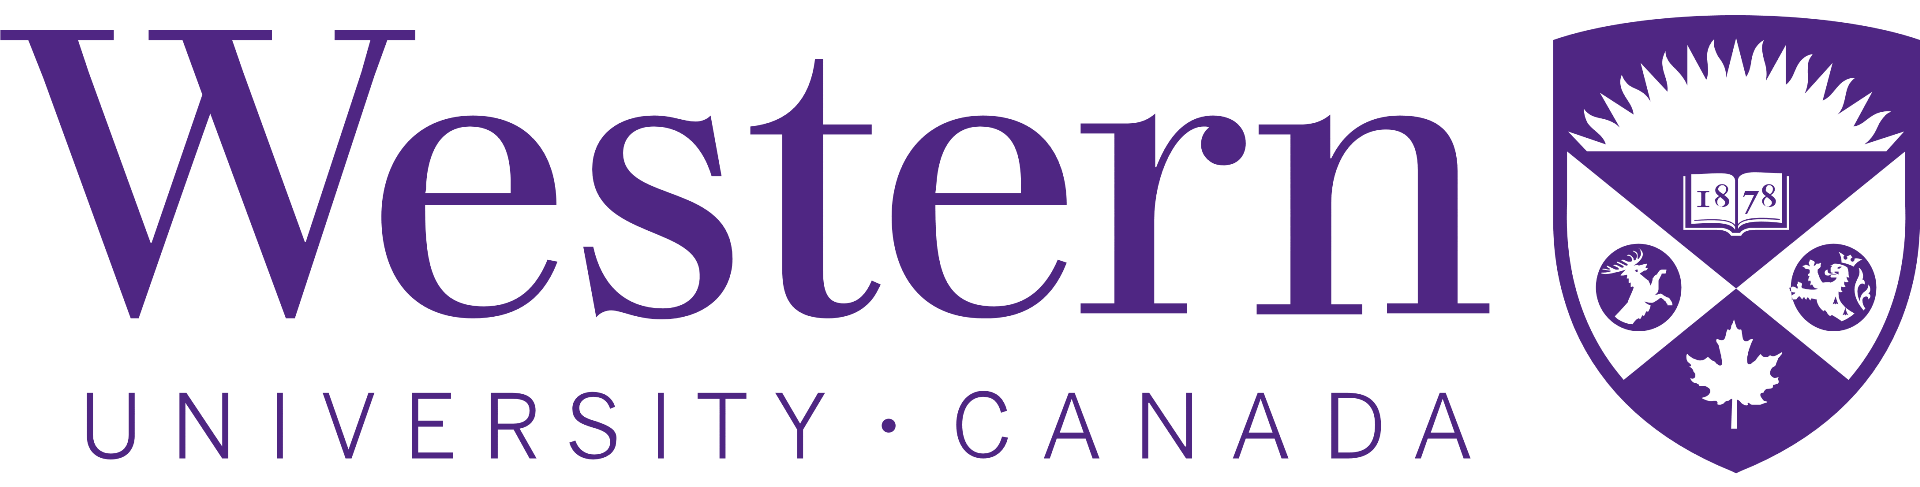 Western University purple logo